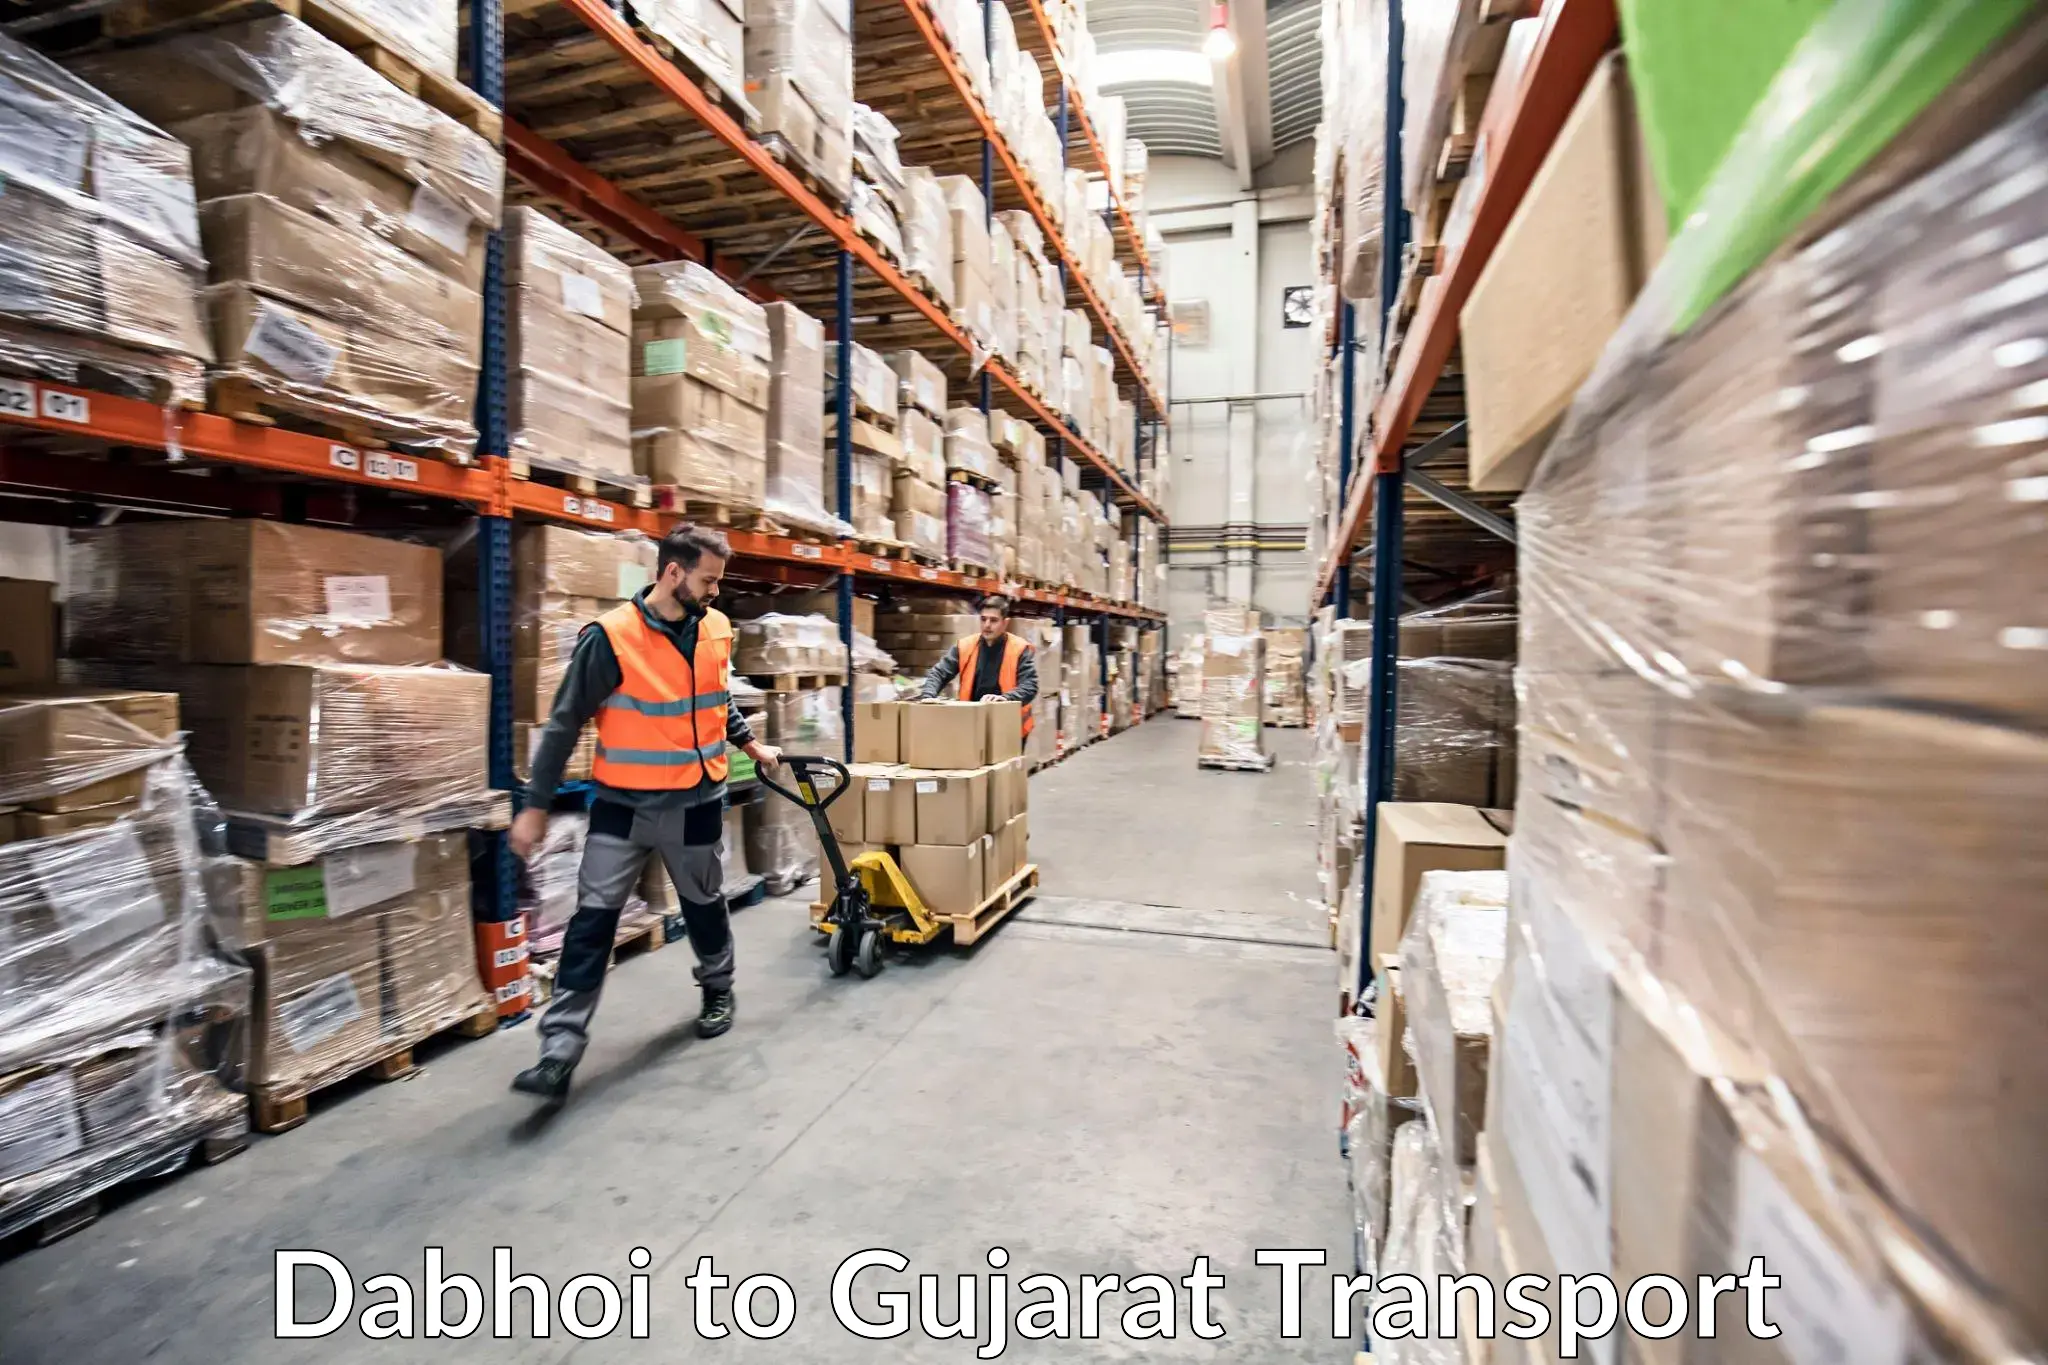 Cargo train transport services Dabhoi to Vijapur